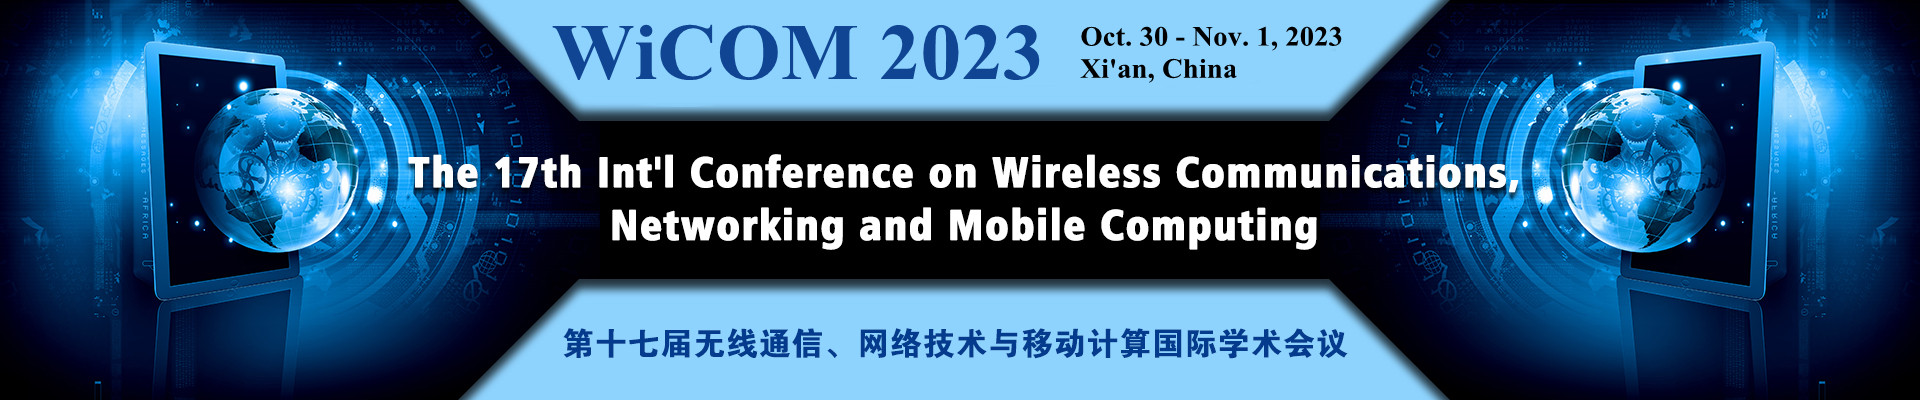 第十七届无线通信、网络技术与移动计算国际学术会议 (WiCOM 2023)